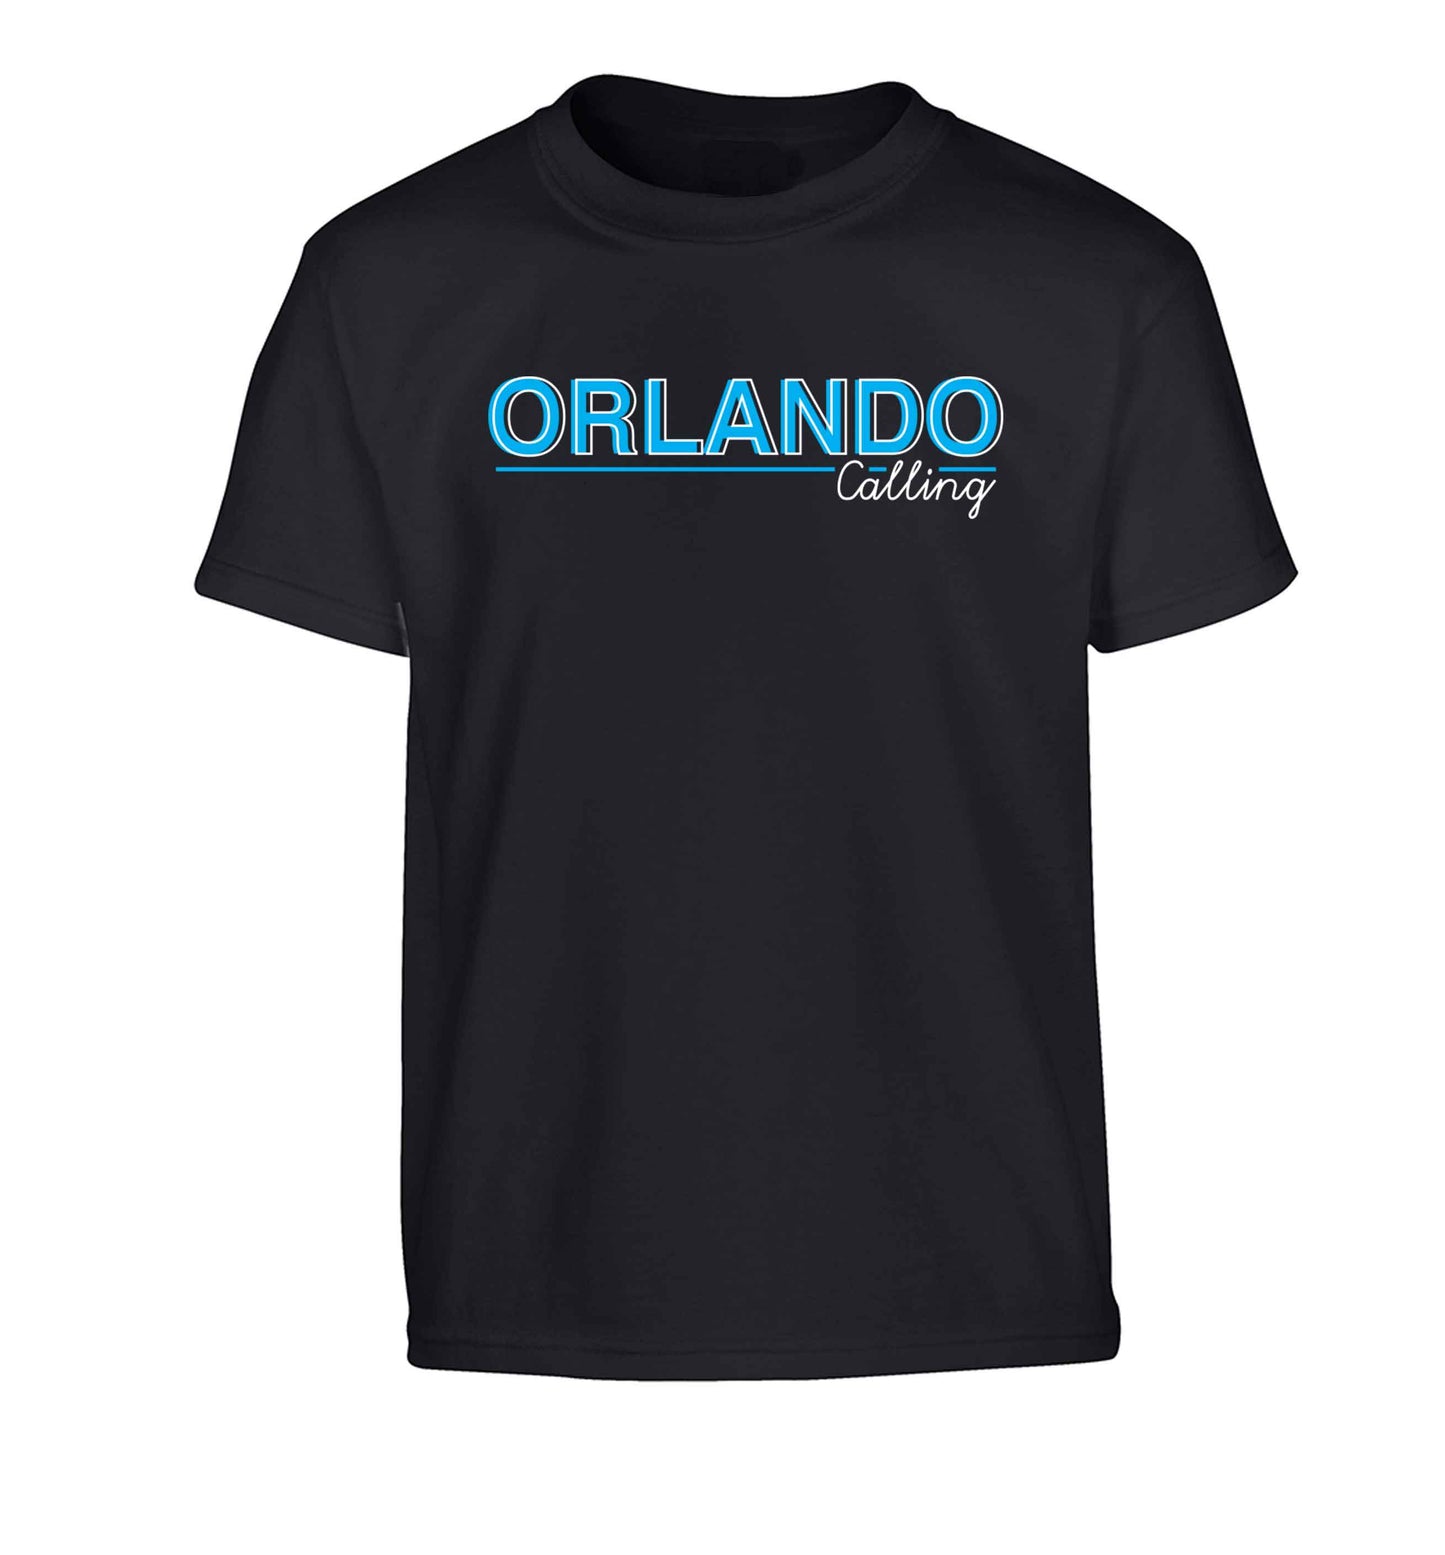 Orlando calling Children's black Tshirt 12-13 Years